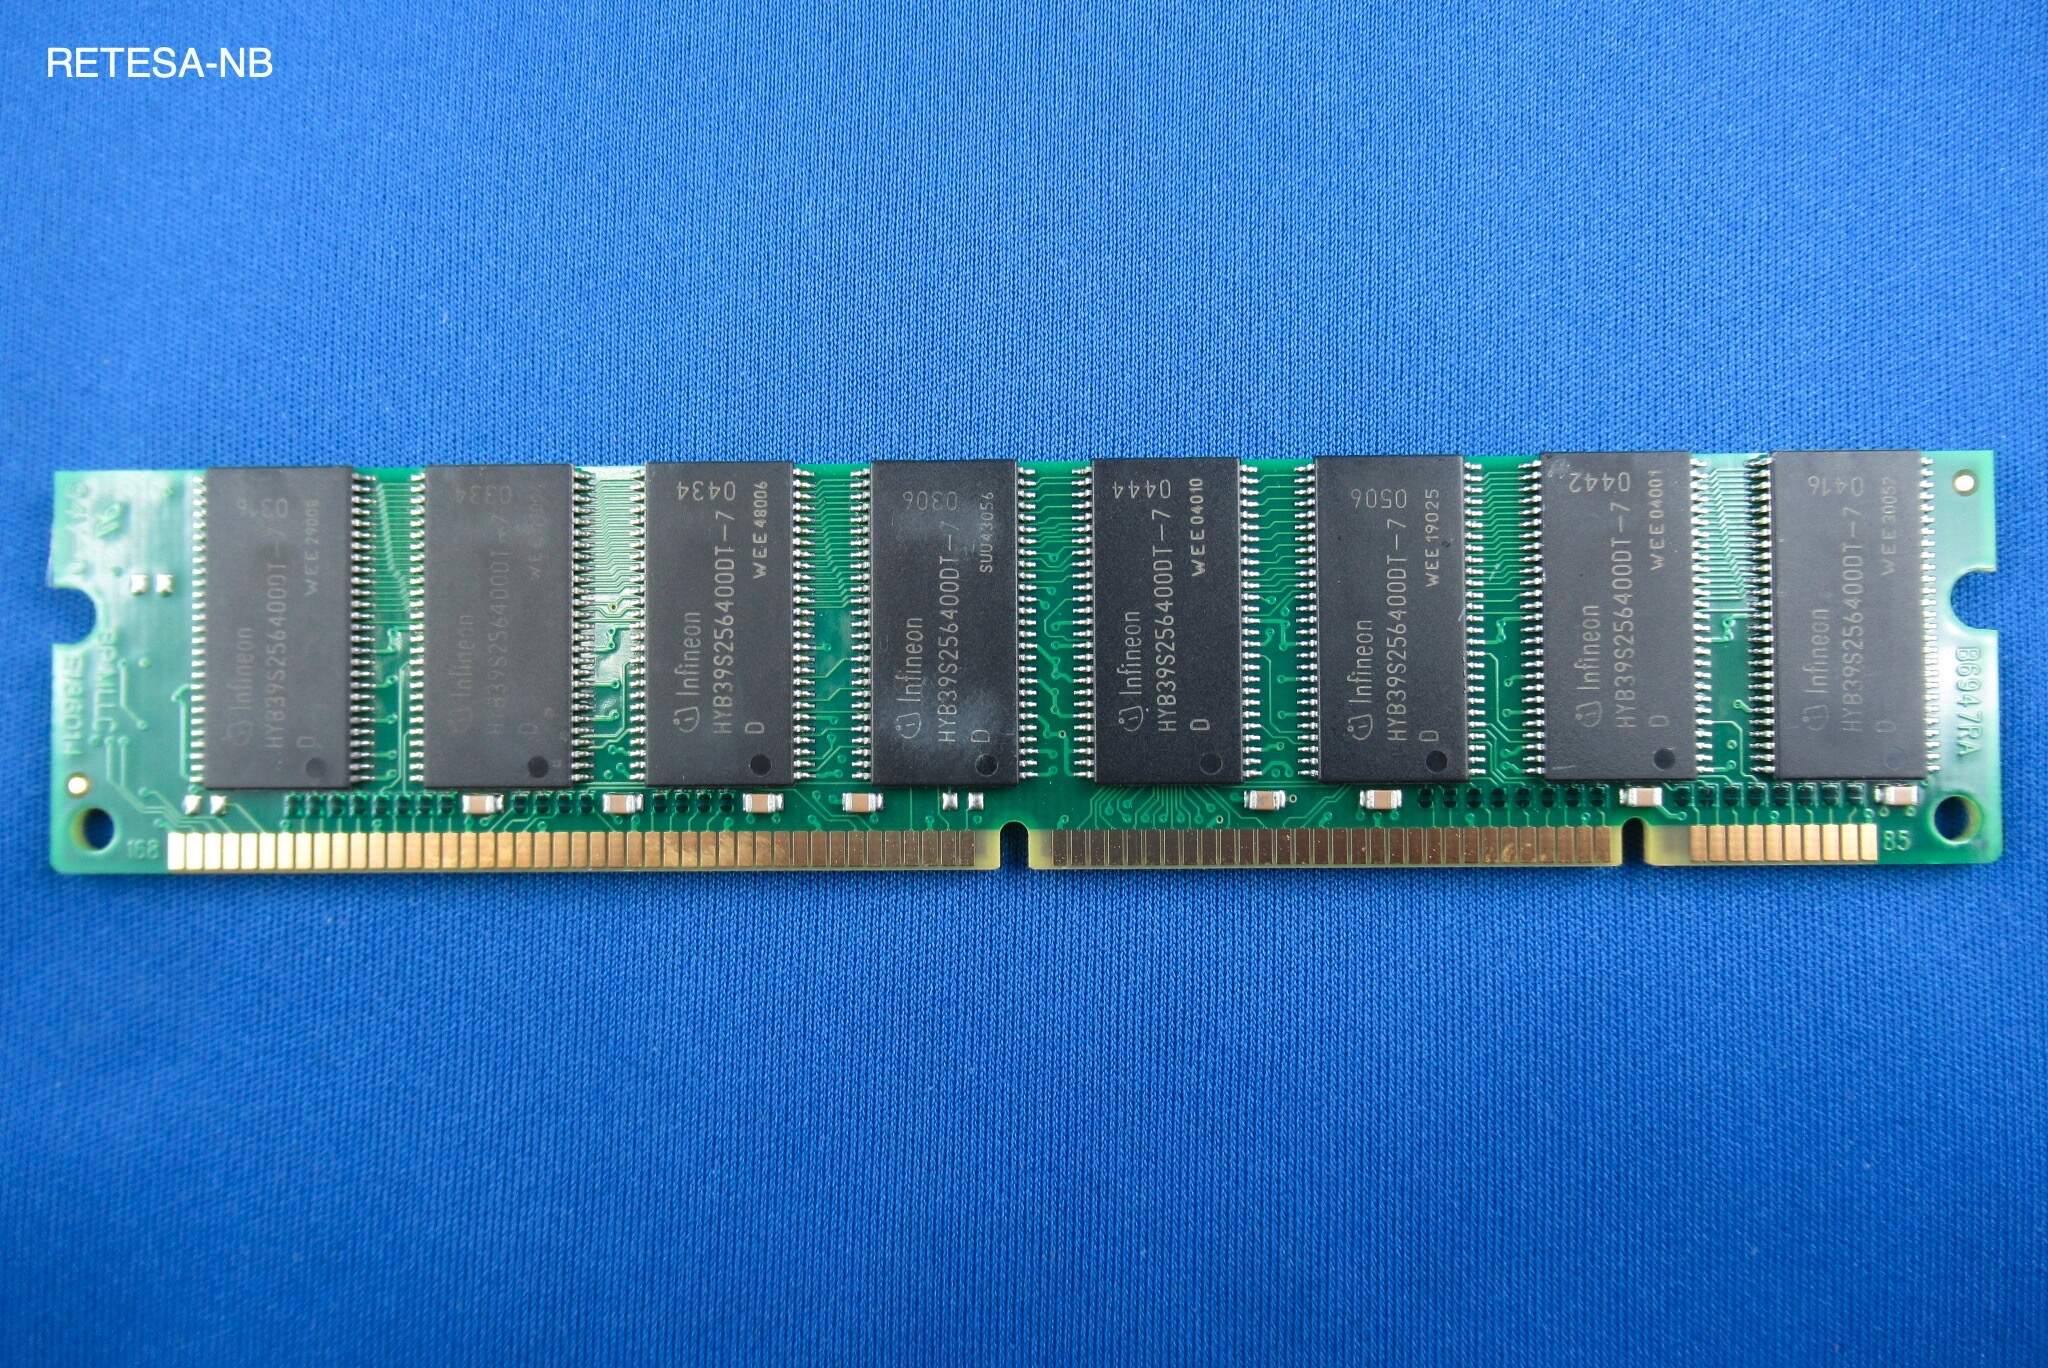 GEBRAUCHT SDRAM 512MB PC133 CL3 Infineon